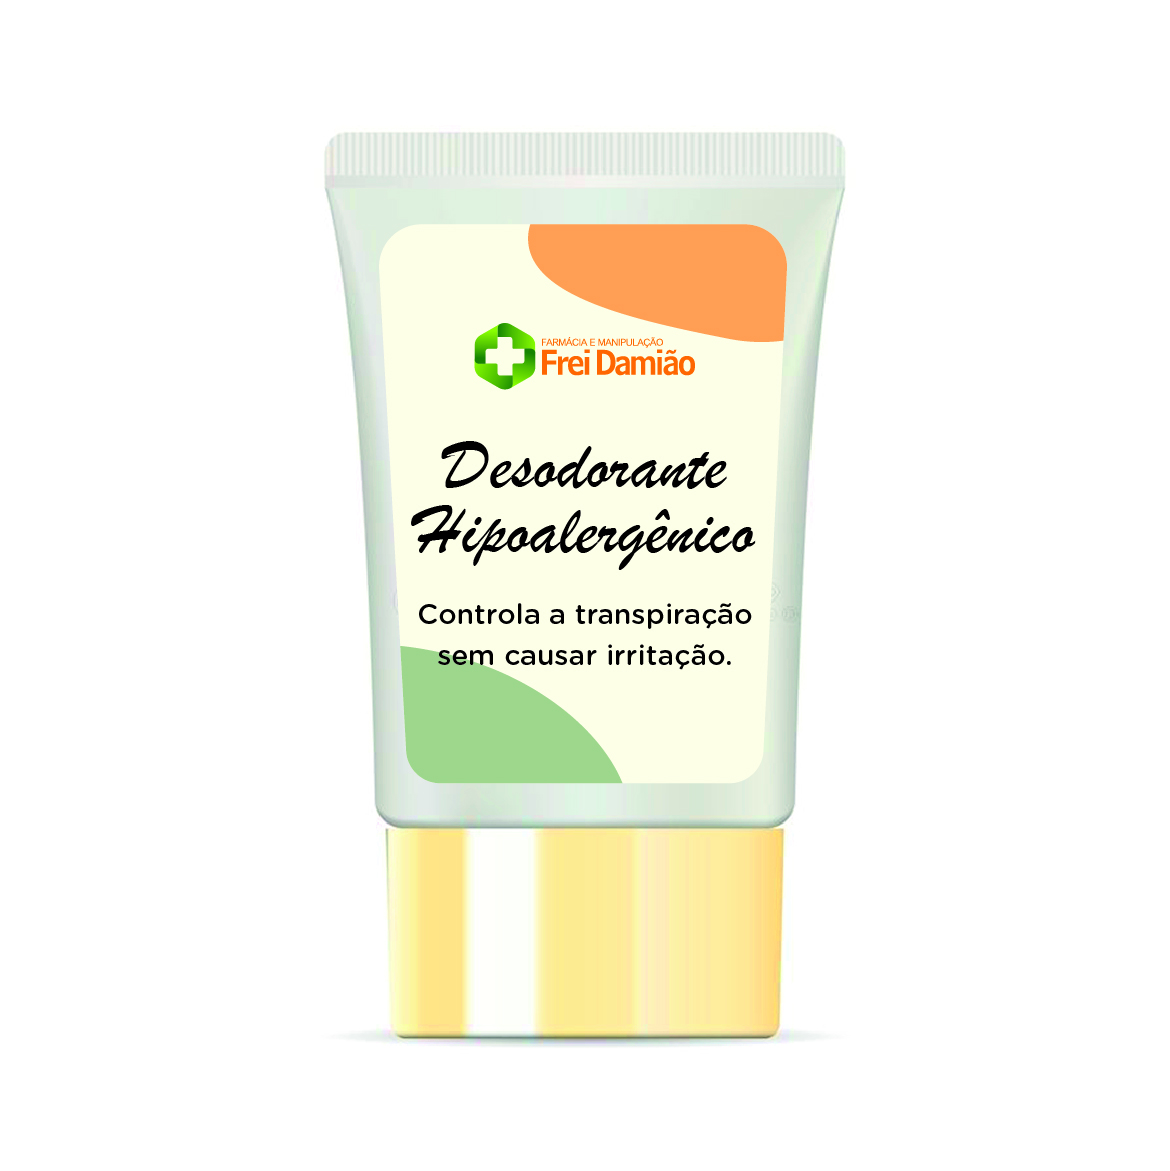 Desodorante hipoalergênico